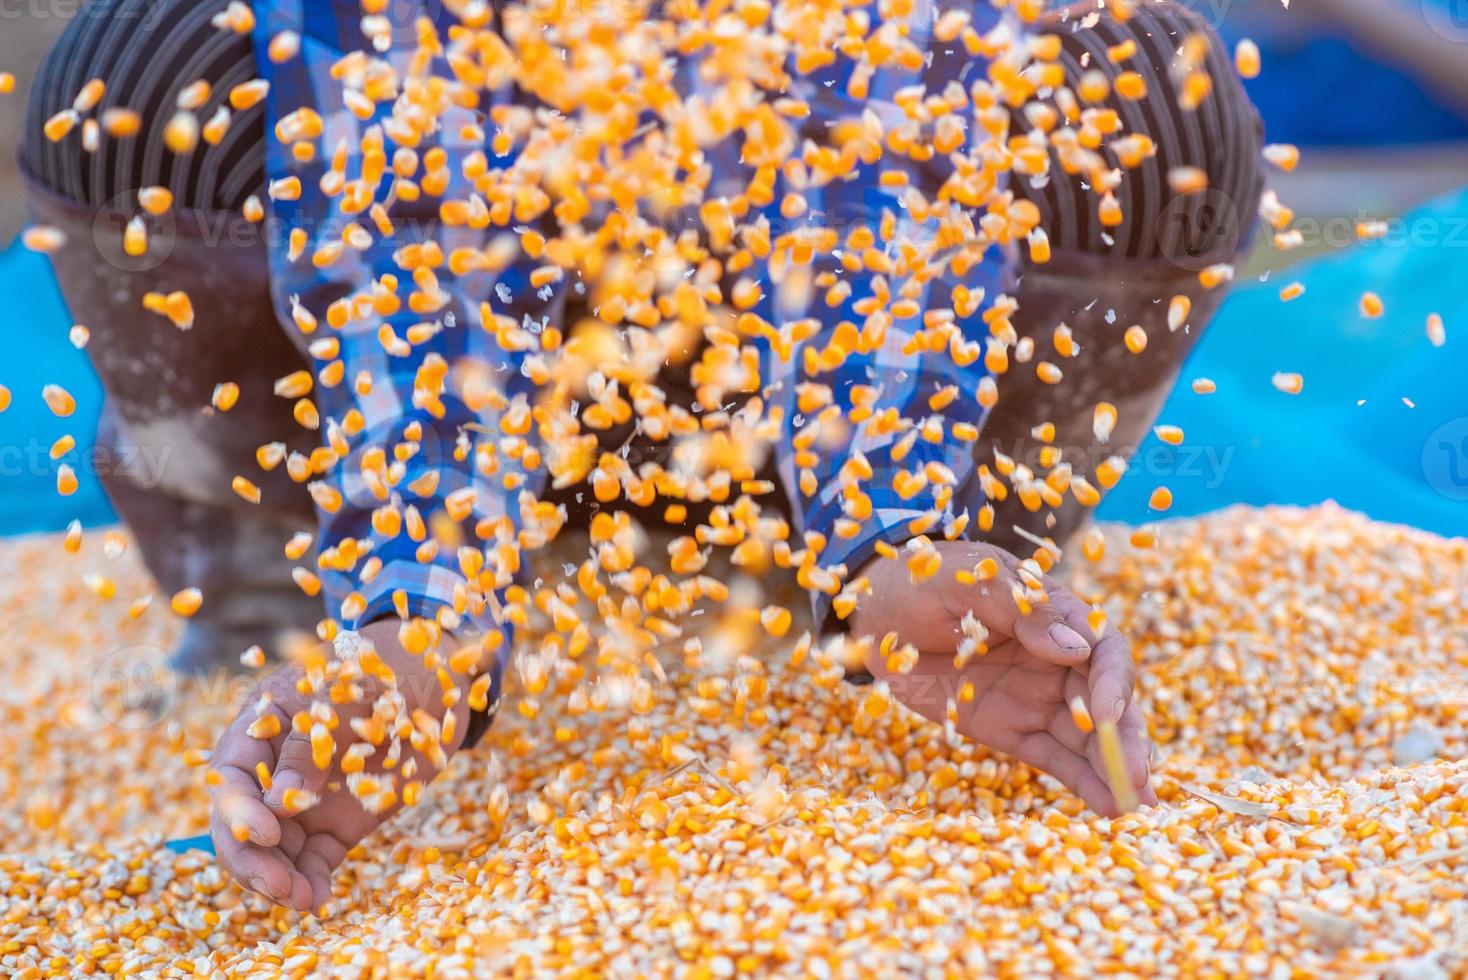 mãos dos agricultores estão coletando sementes de milho. foto